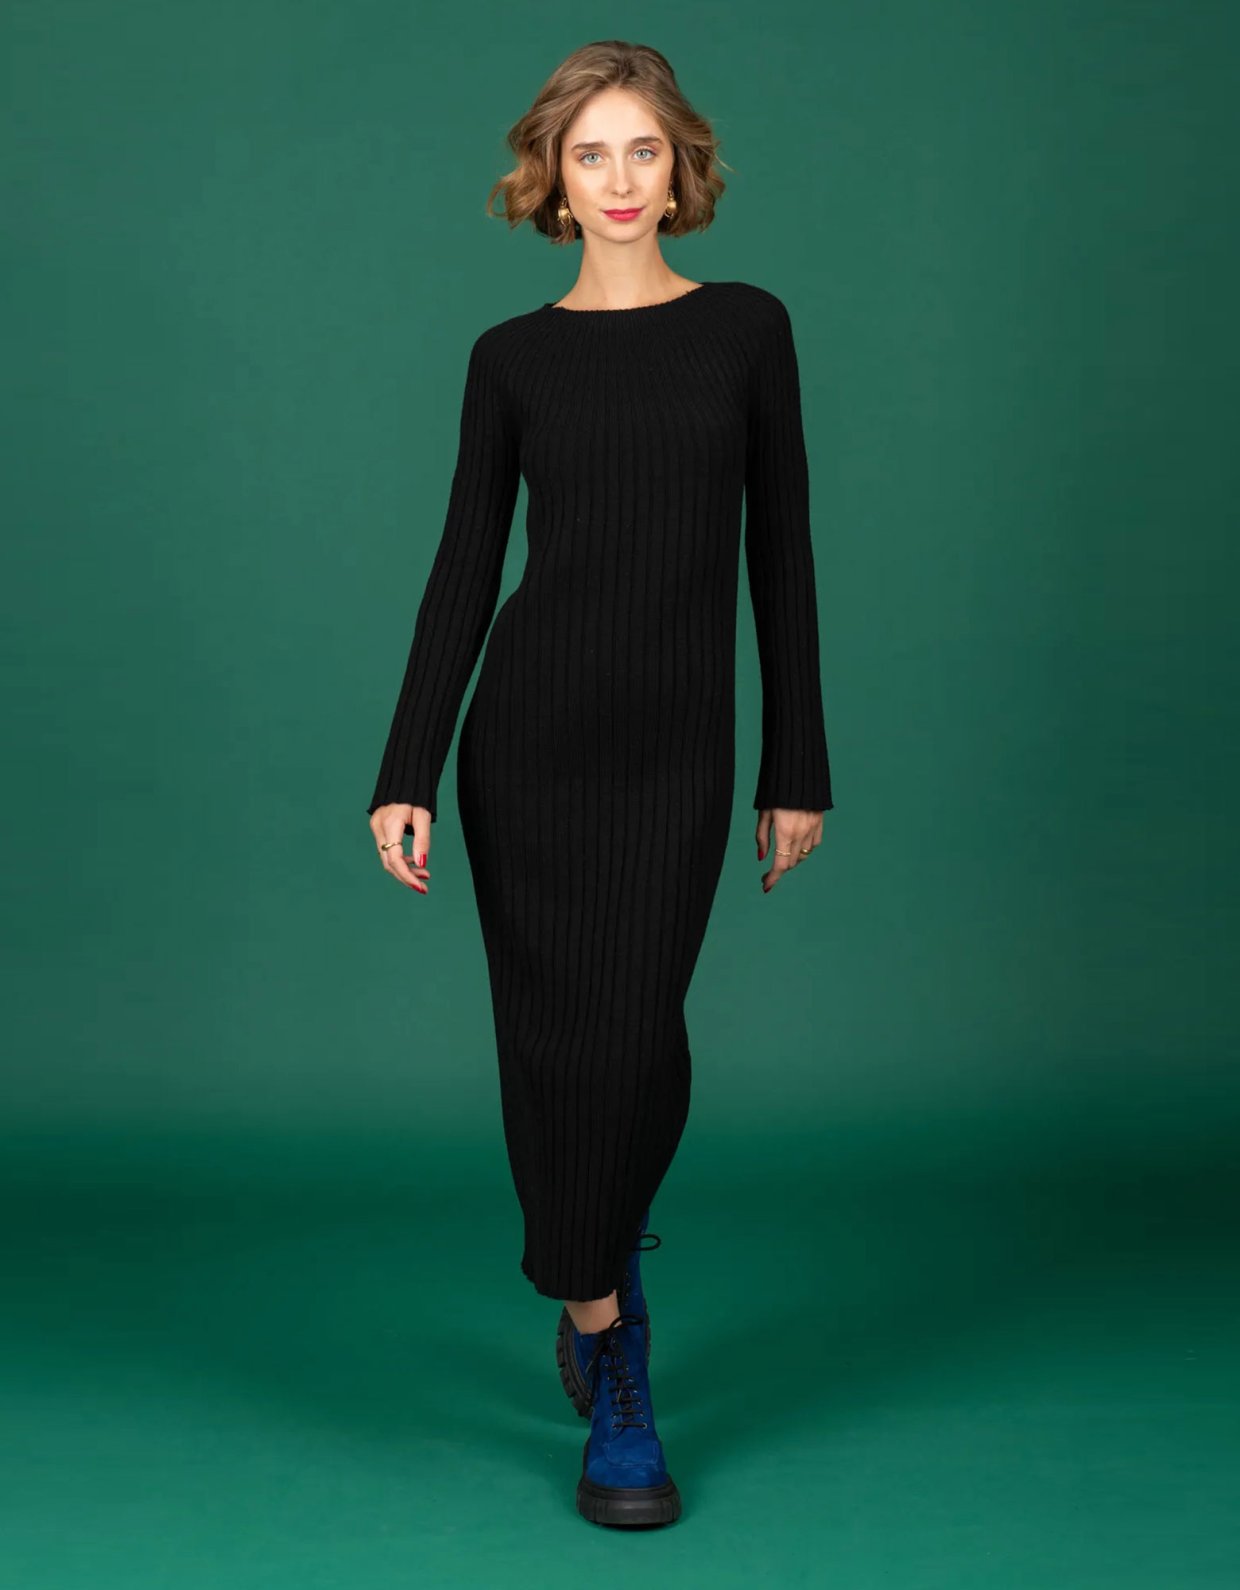 Chaton Linnea knit dress black